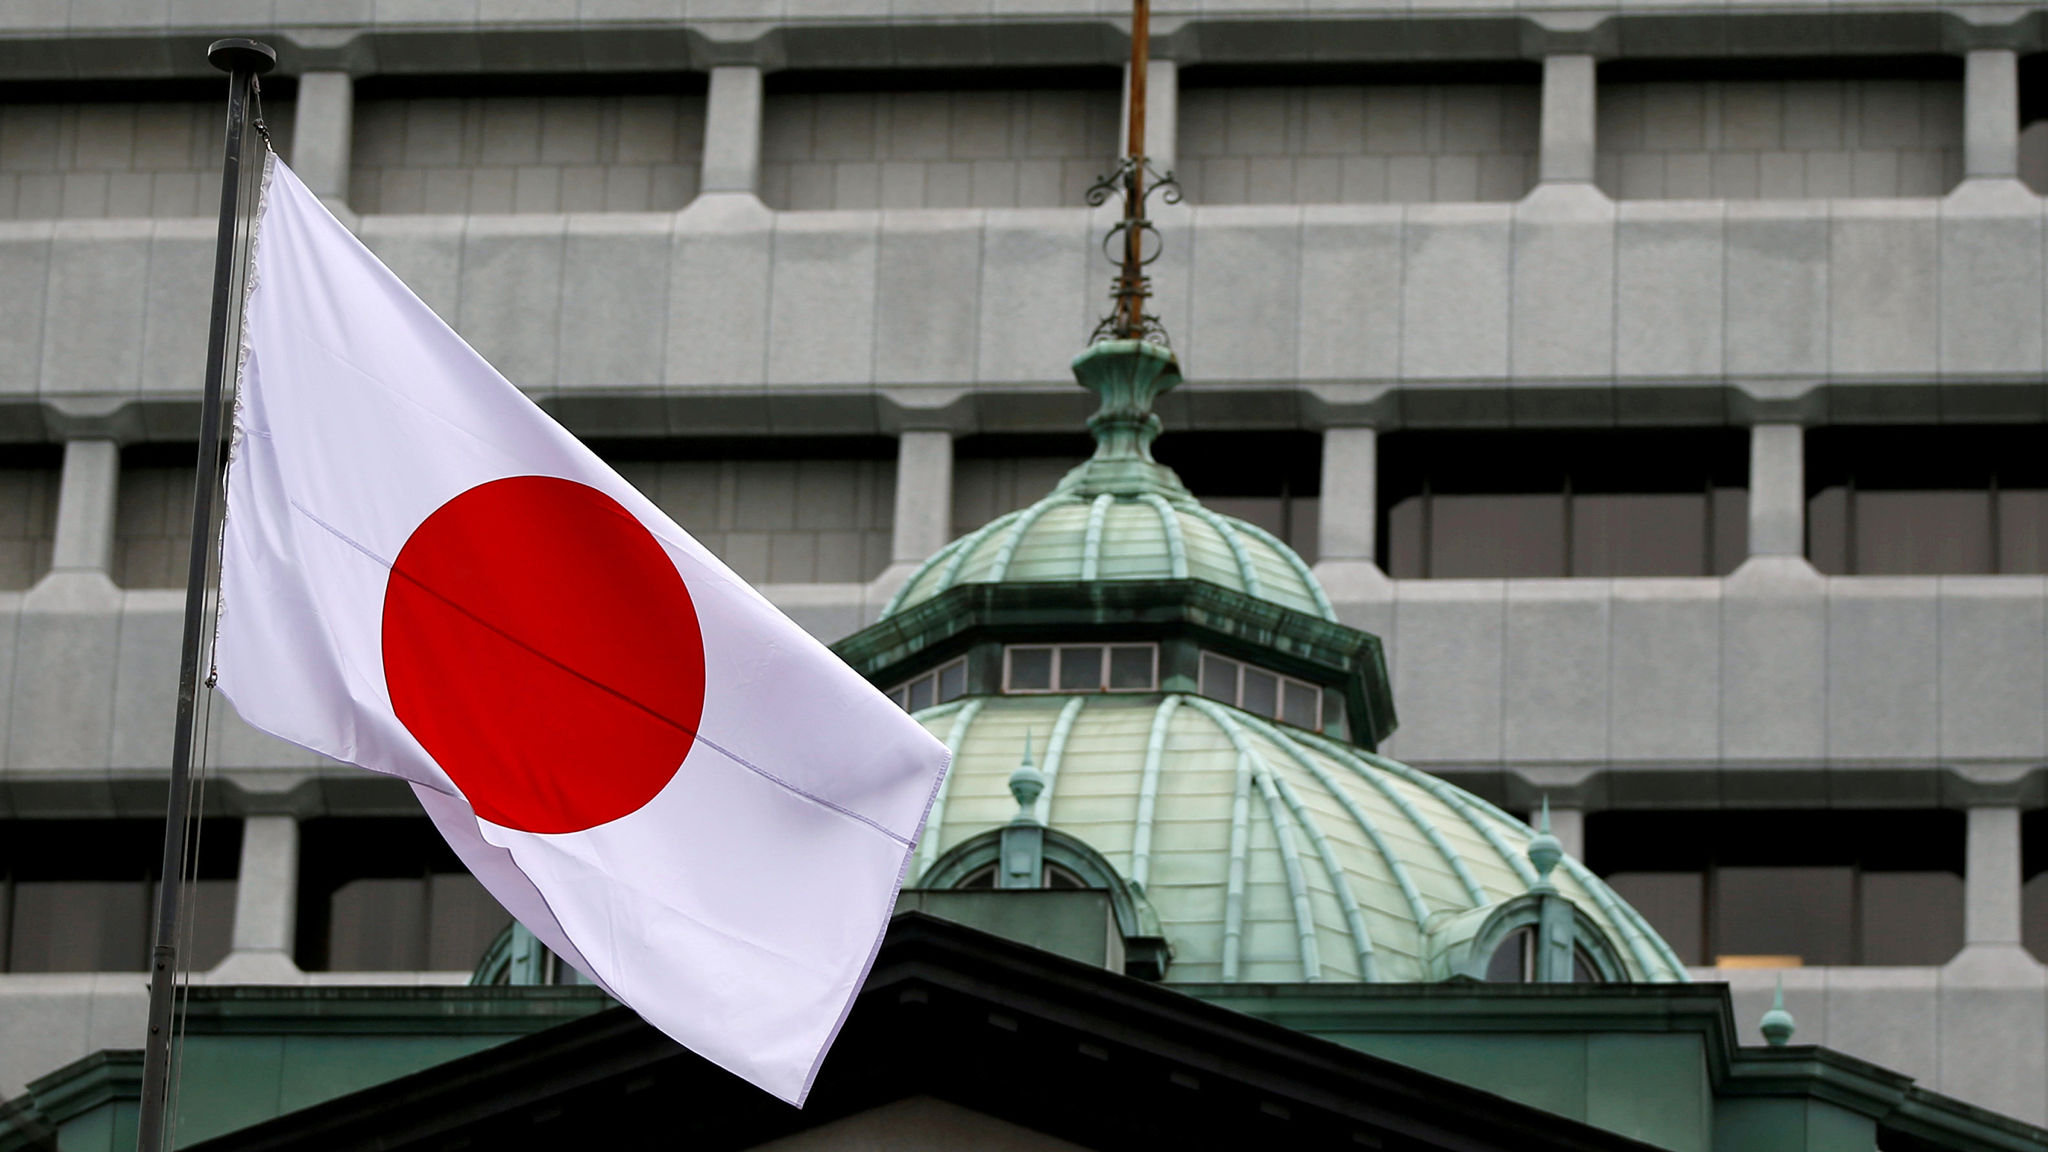 Ճապոնիան մտադիր է պաշտպանական ծախսերը հասցնել ավելի քան 40 տրլն իենի